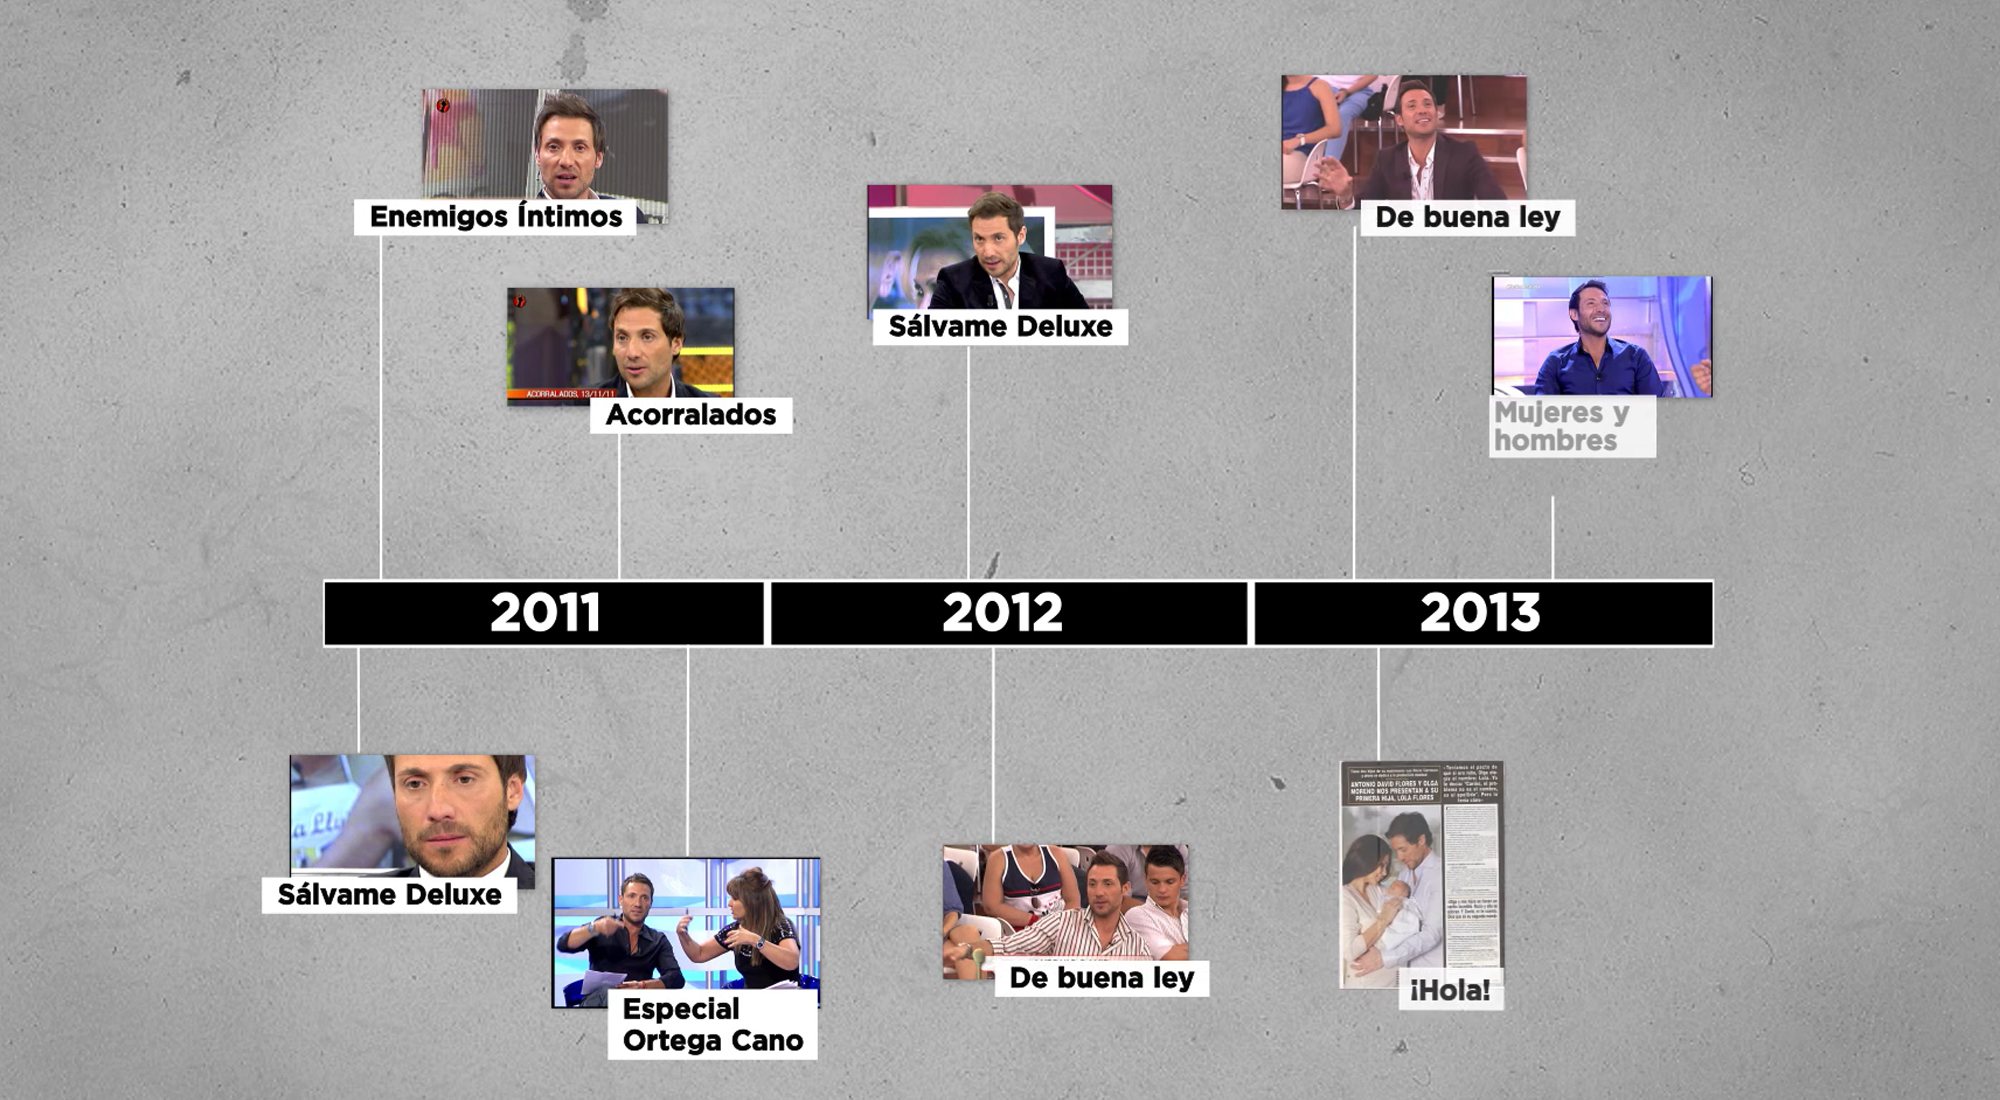 Las intervenciones televisivas de Antonio David entre 2011 y 2013